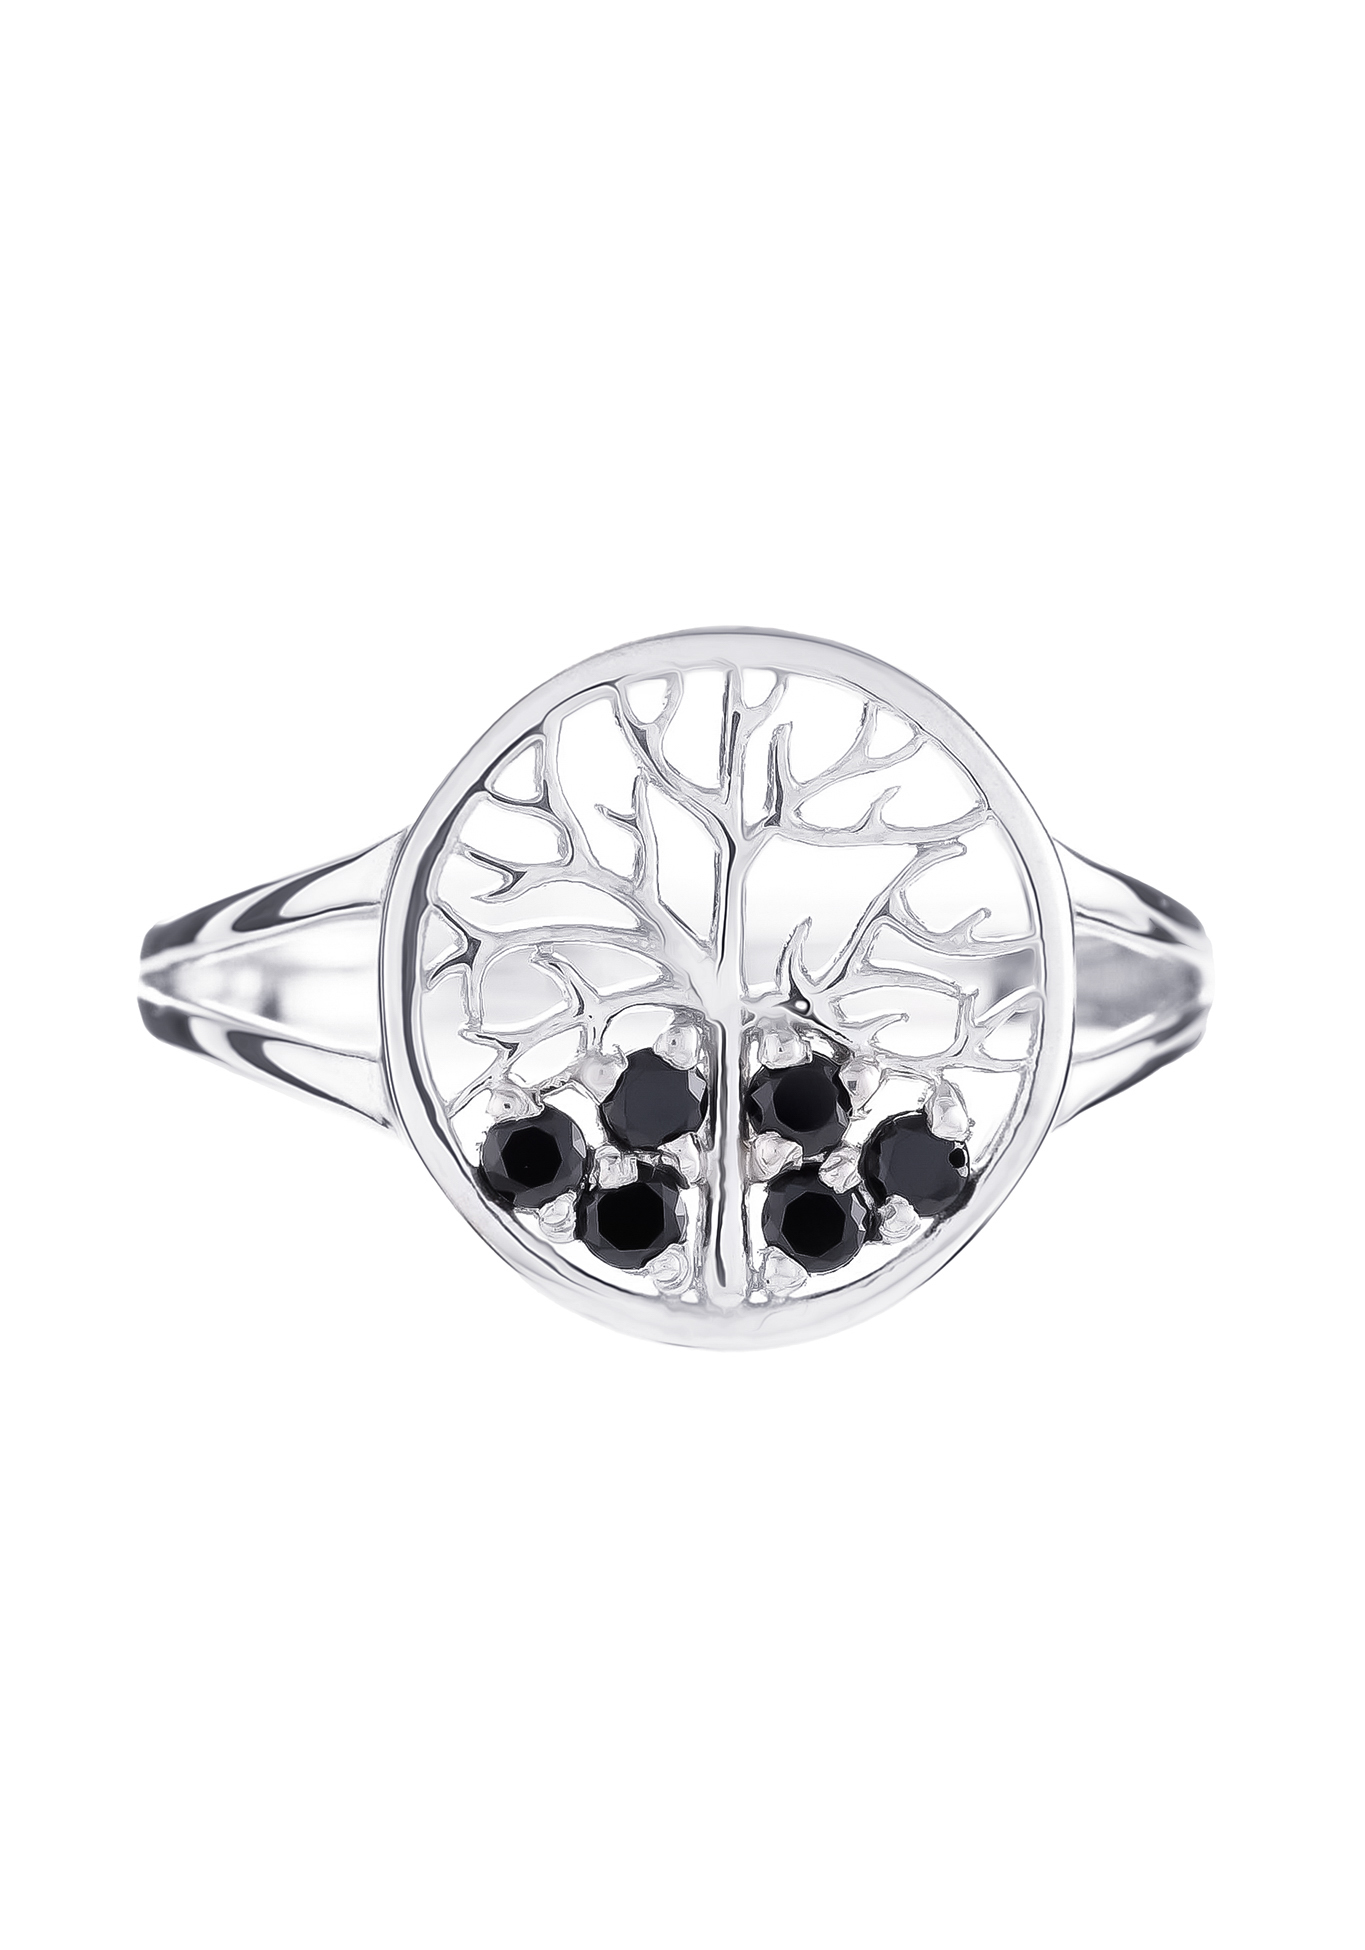 Серебряное кольцо «Дерево удачи» Серебряный Дом, цвет родий, размер 16 сплит шенк - фото 2